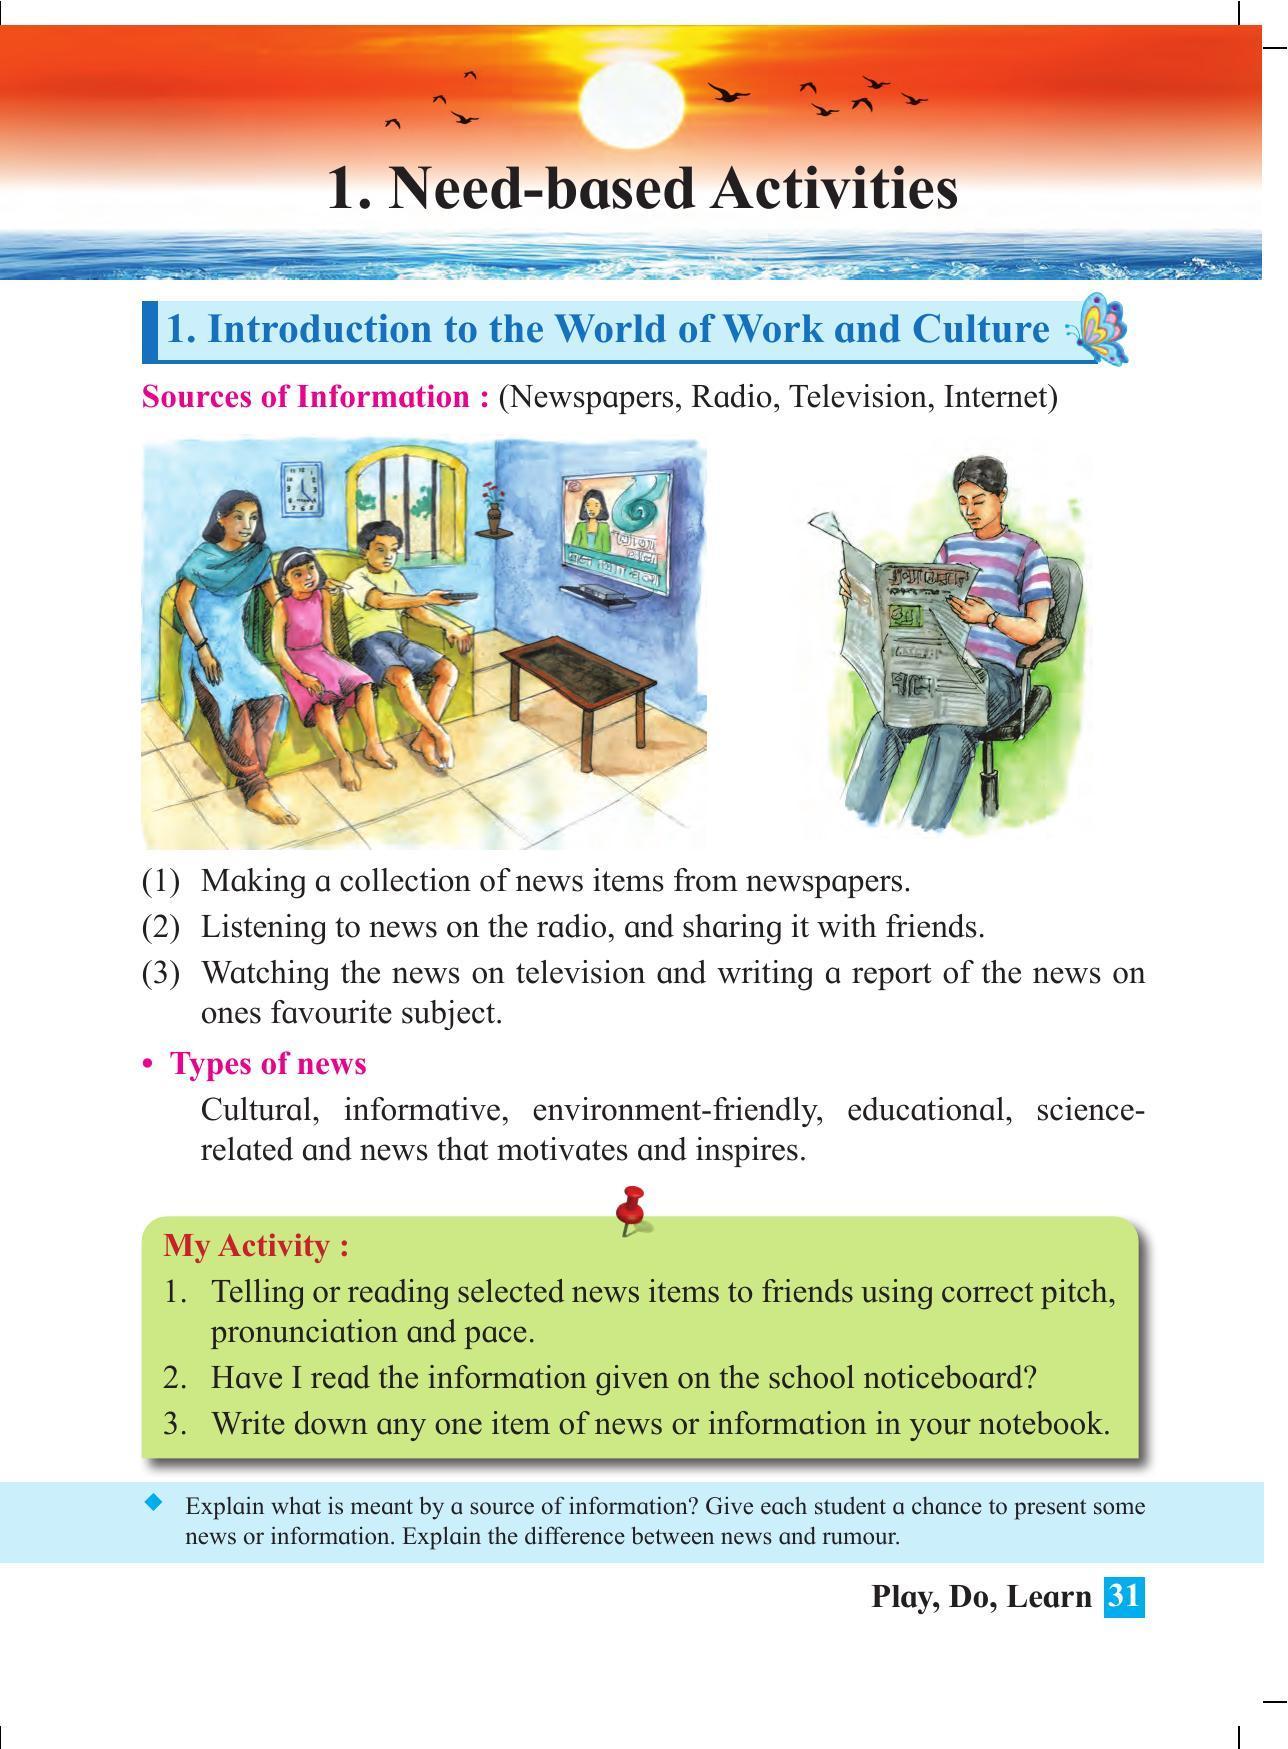 Maharashtra Board Class 4 Play Do Learn (English Medium) Textbook - Page 40